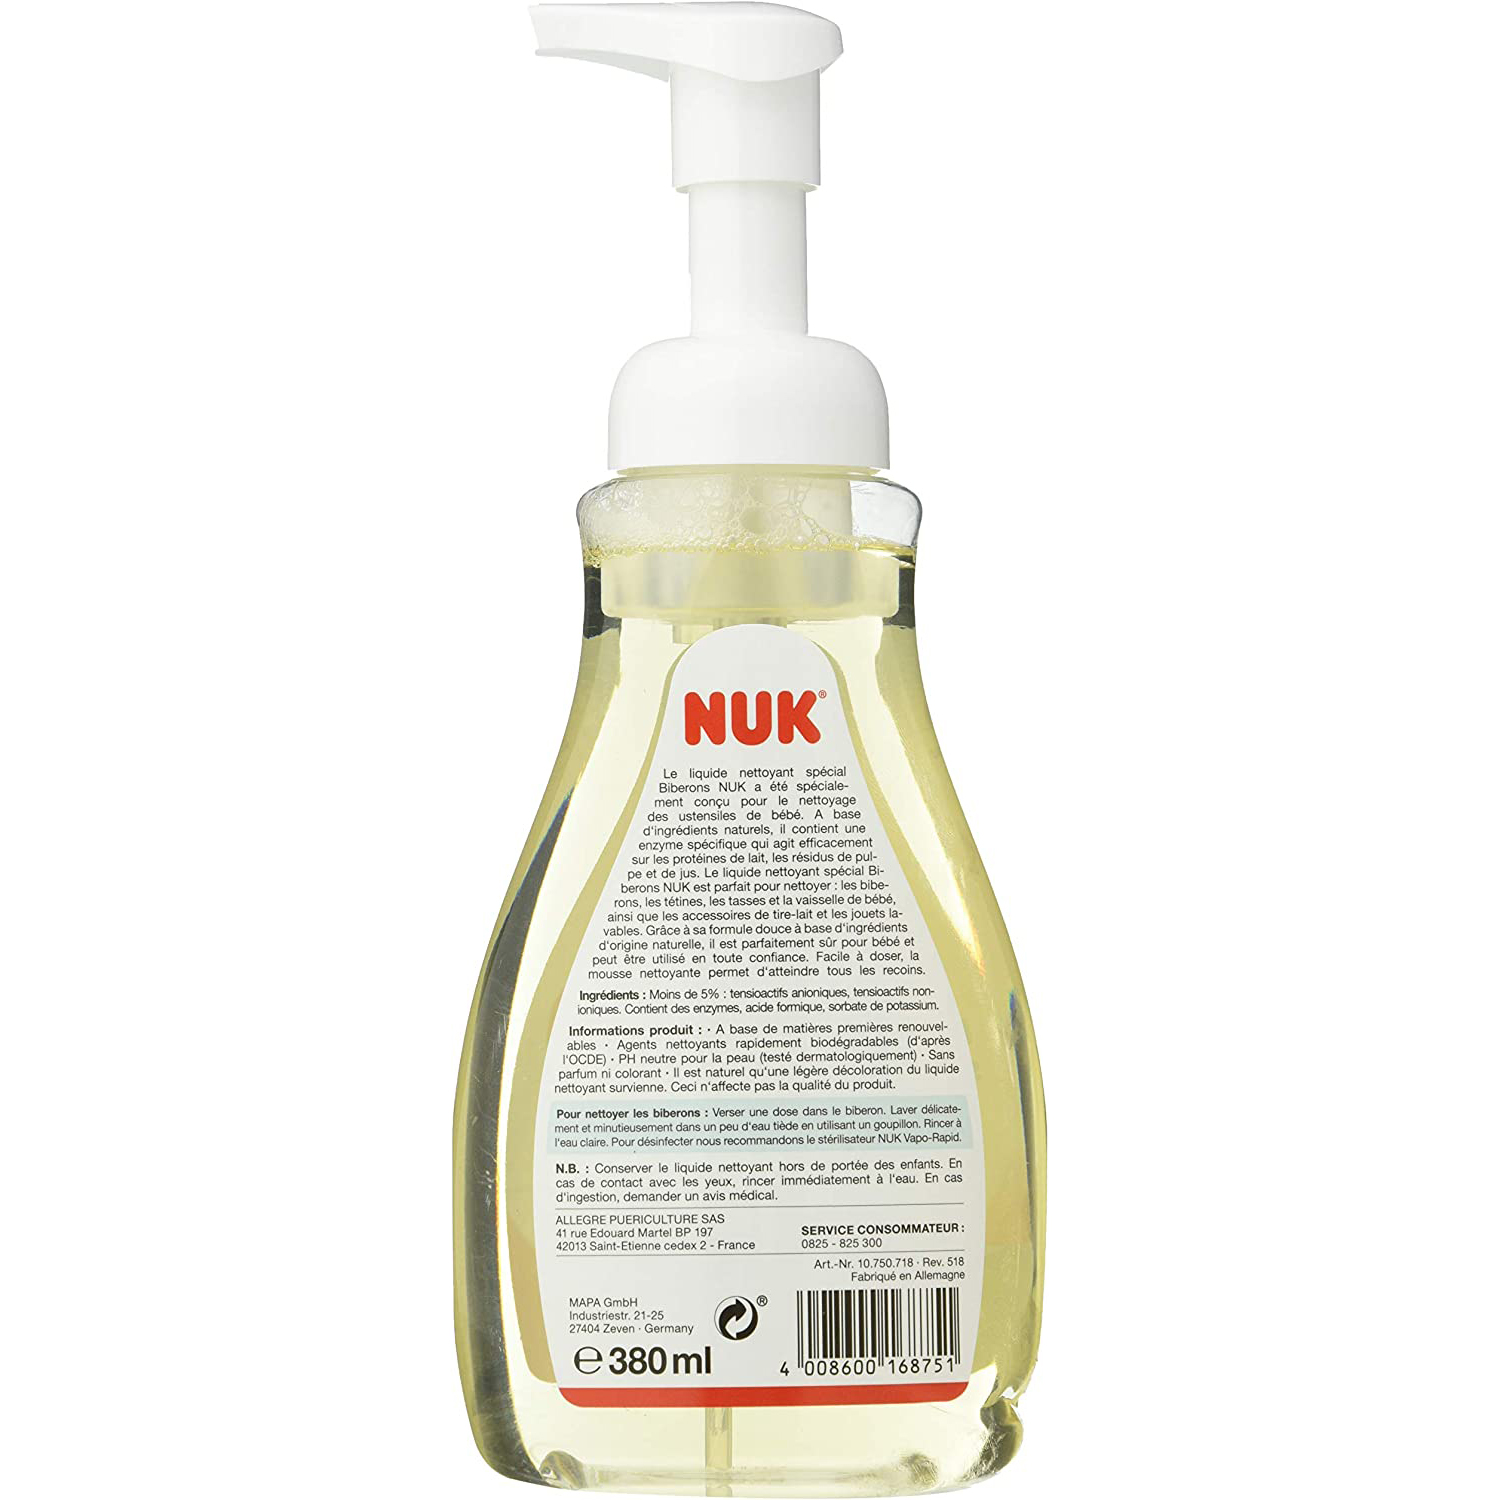 Liquide nettoyant biberons x2 avec flacon mousseur 380 ml de Nuk, Produits  d'entretien : Aubert